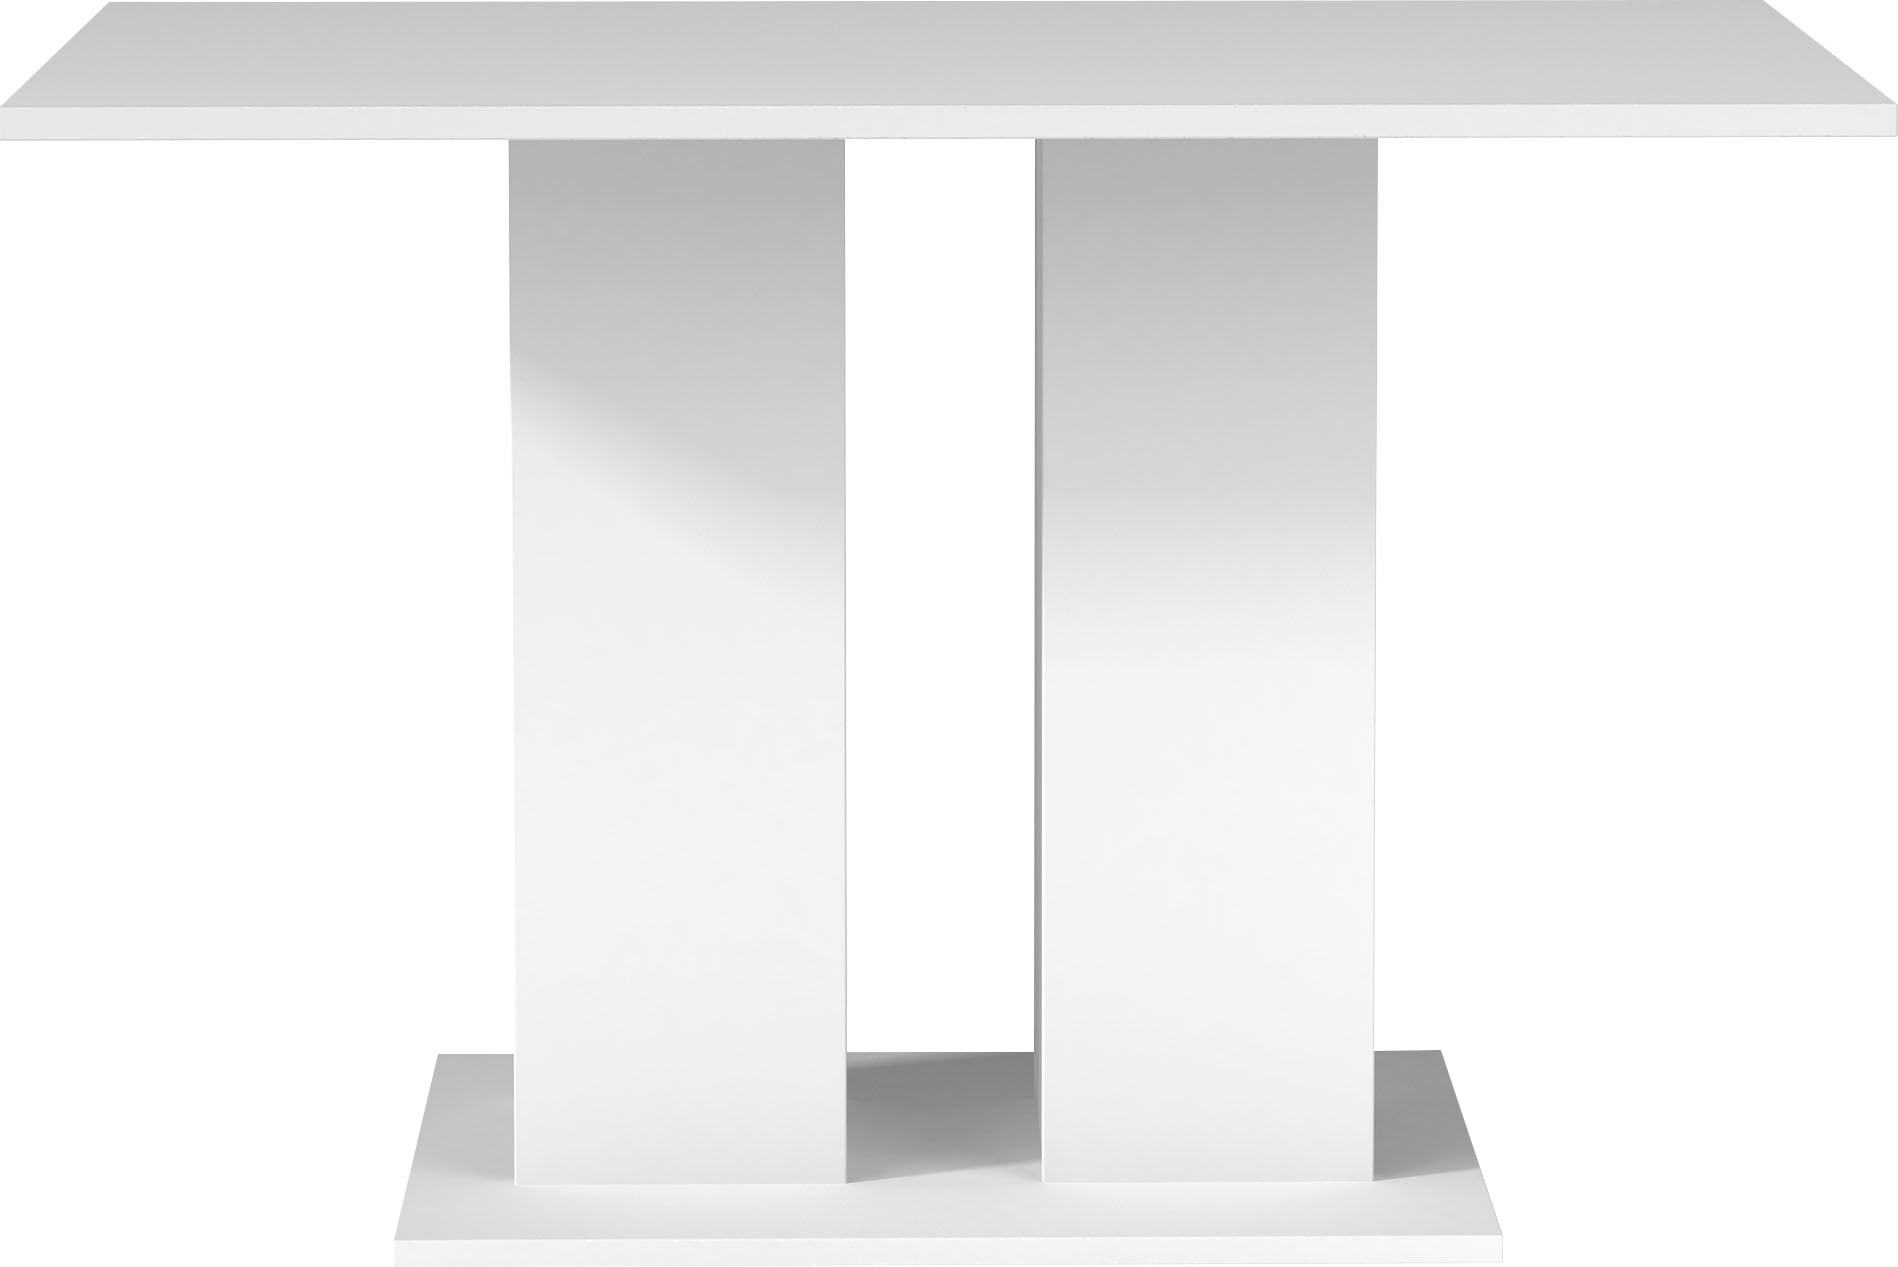 Homexperts Säulen-Esstisch »Mulan«, Breite 110 cm mit Regalfächern, in 3 Farben erhältlich